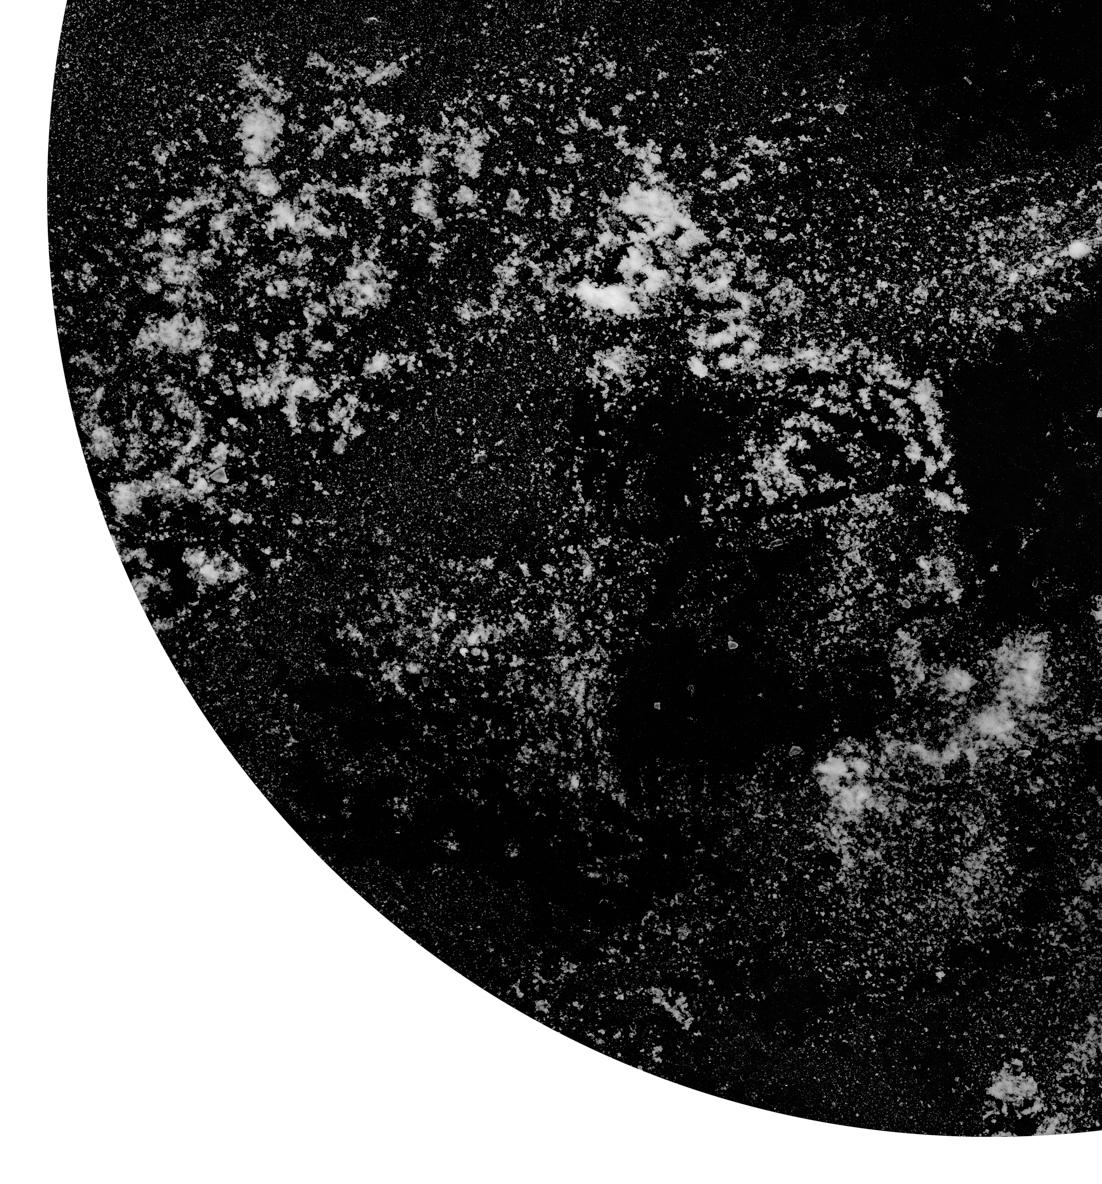 Interstellar II, 2019 von Shine Huang
Archivpigmentdruck auf Hahnemuhle Kunstdruckpapier.
Bildgröße: 42 Zoll. H x 42 in. W
Auflage 2/6 + 1AP

Verso in Tinte signiert.
ungerahmt
____________________________
Shine Huang (M.F.A. Photography) ist eine